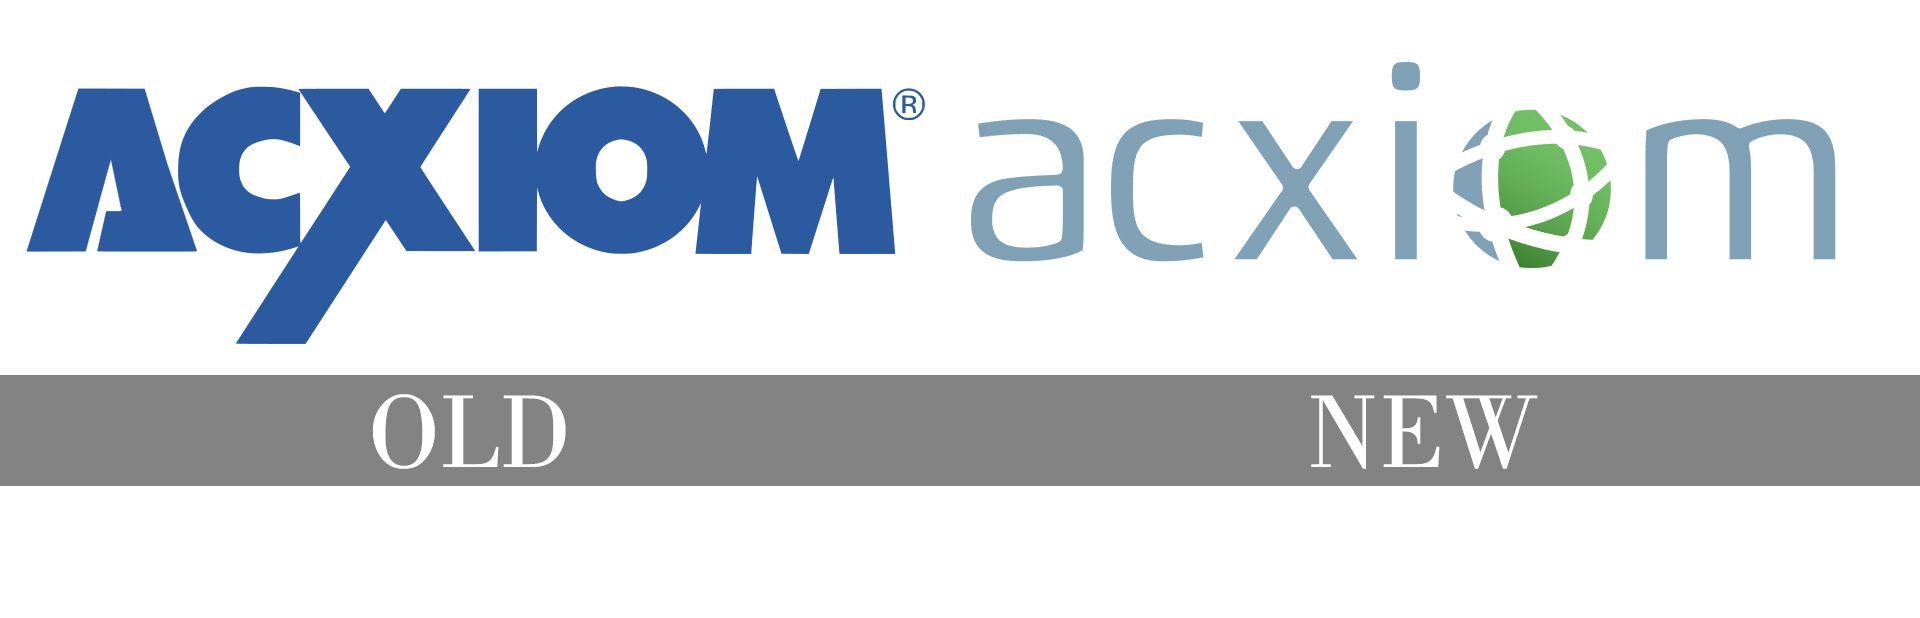 Acxiom Logo - Acxiom Logo, Acxiom Symbol Meaning, History and Evolution